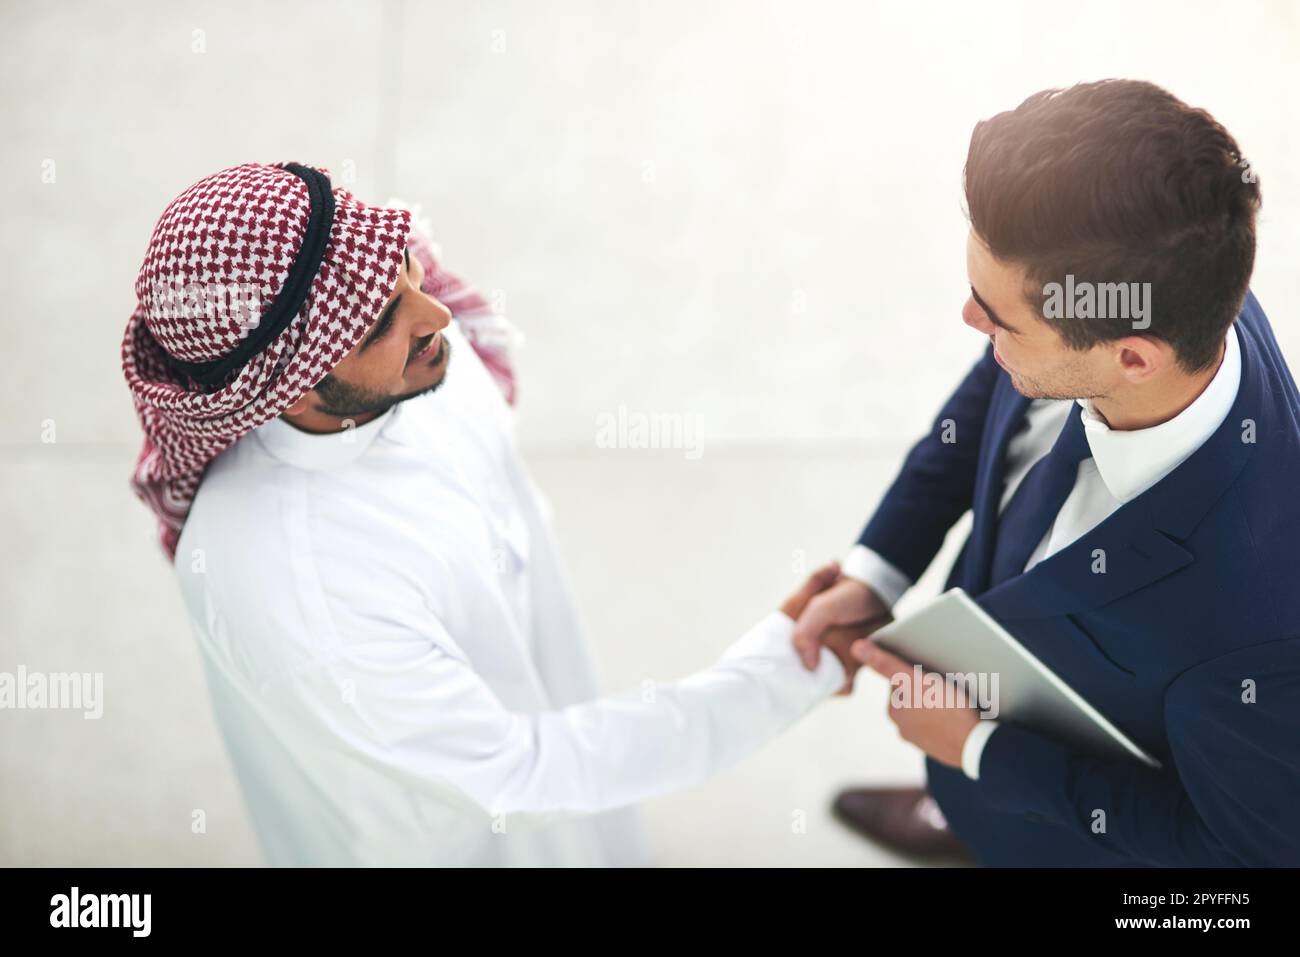 La mise en réseau à des millions. un jeune homme d'affaires musulman qui se tremble avec un associé dans un bureau moderne. Banque D'Images